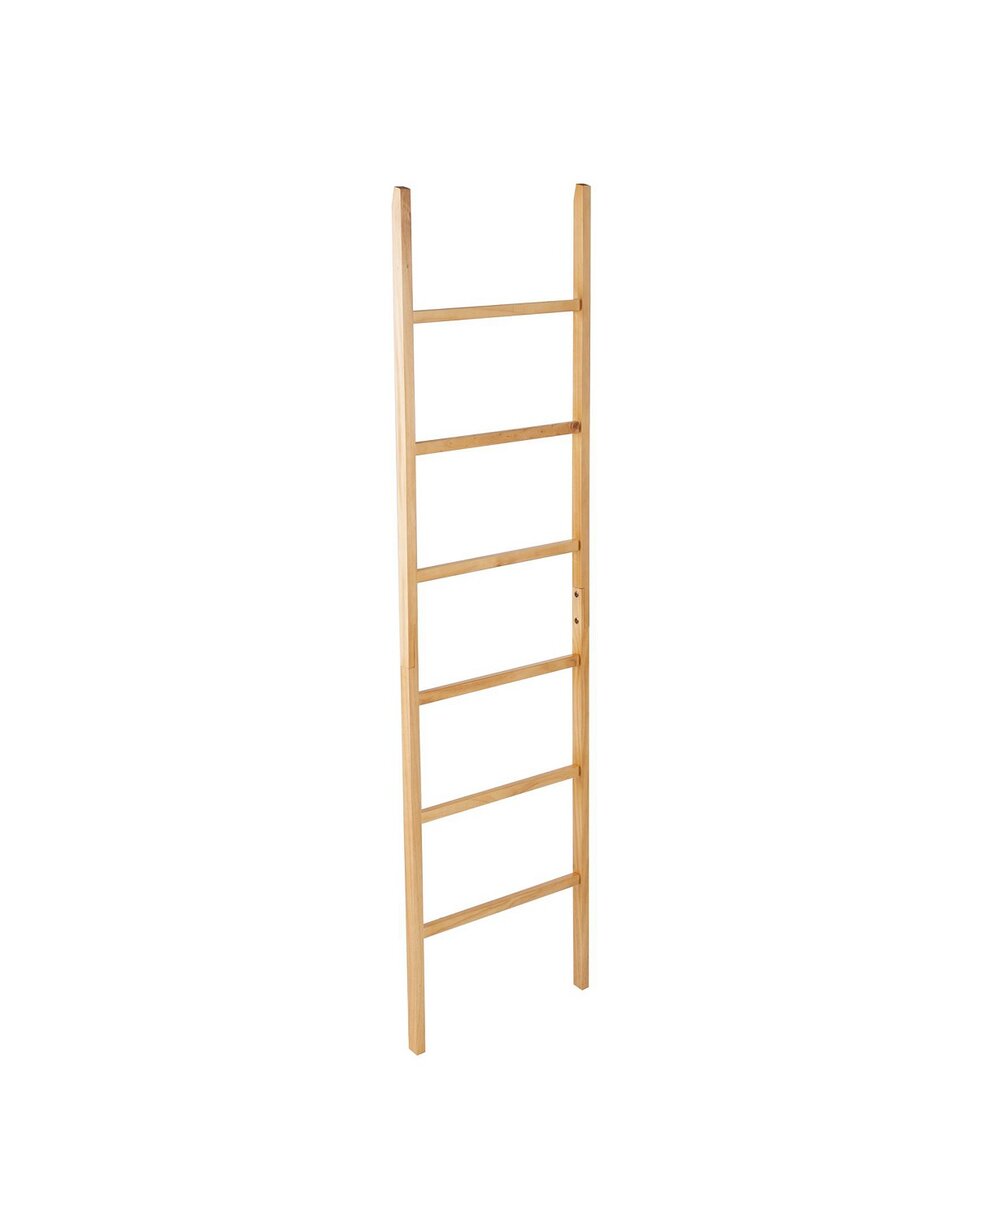 Freestanding Wooden Ladder Rack, Macys, $99